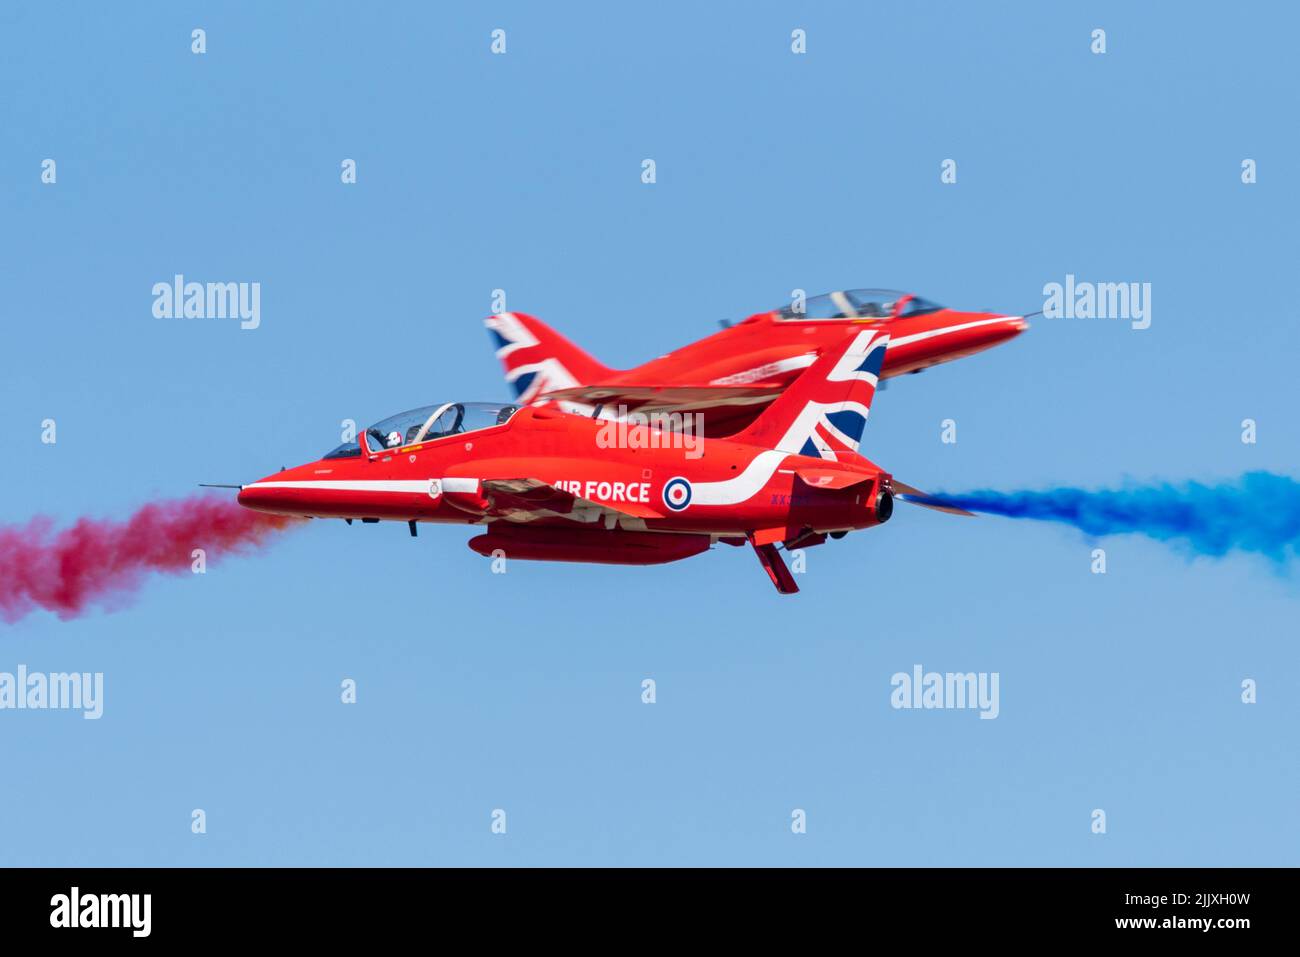 Royal Air Force Red Arrows mostra la squadra che vola al Royal International Air Tattoo Airshow al RAF Fairford, Regno Unito. Passaggio opposizione coppia sincro Foto Stock